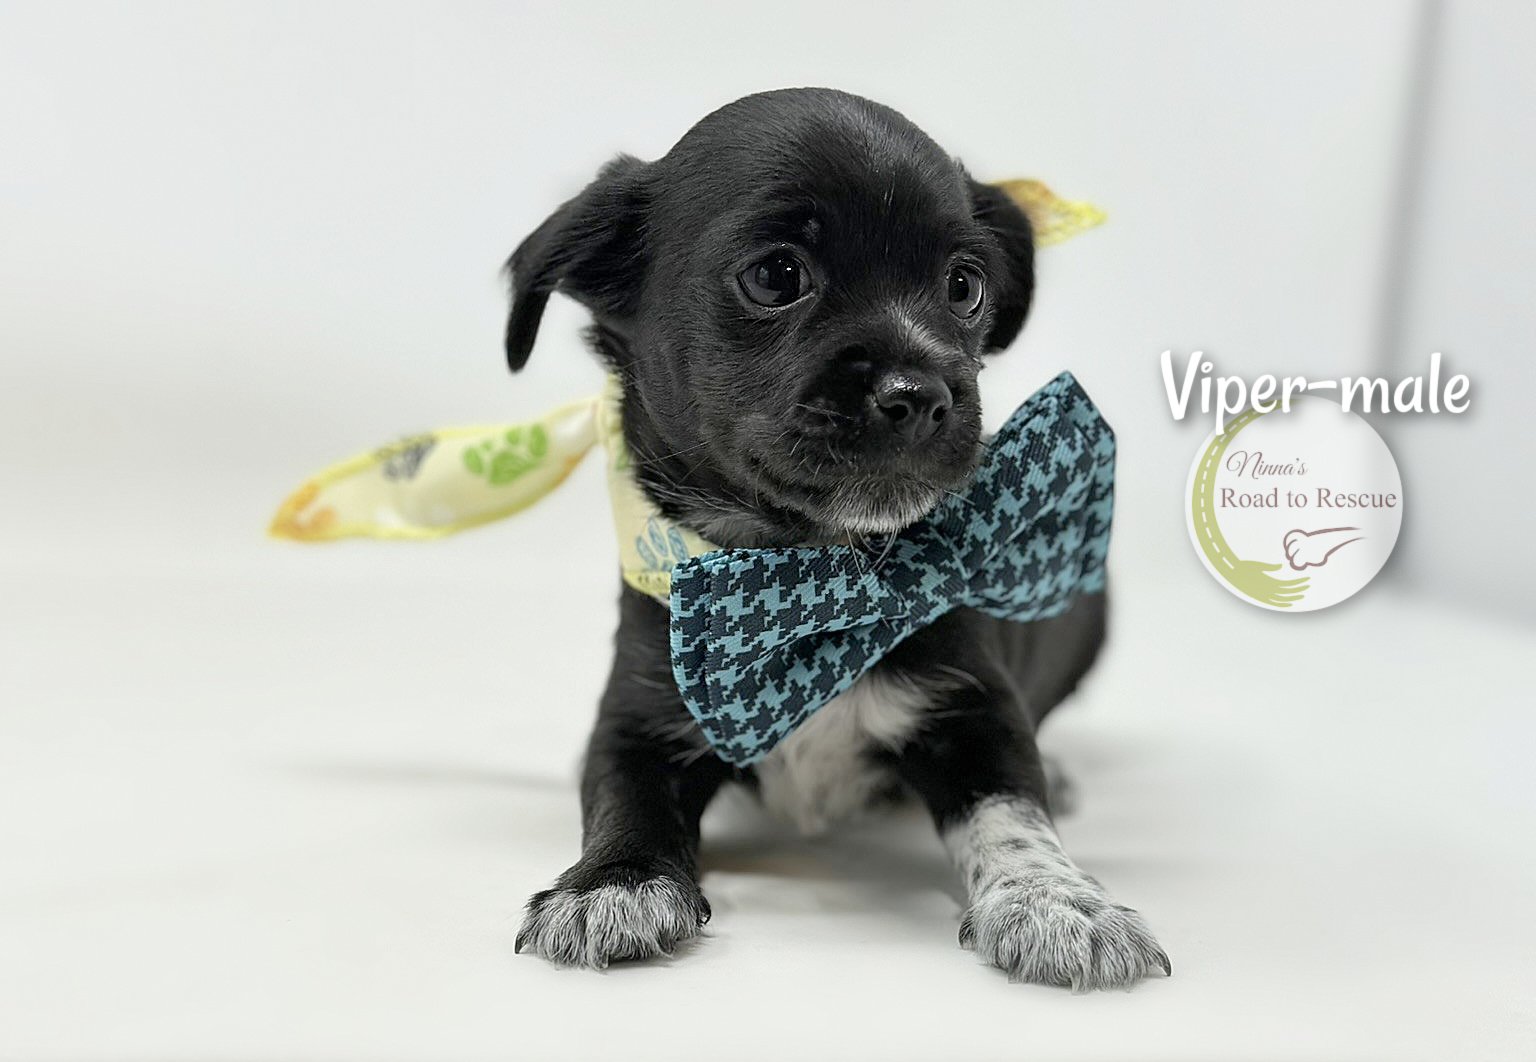 adoptable Dog in Benton, LA named Viper